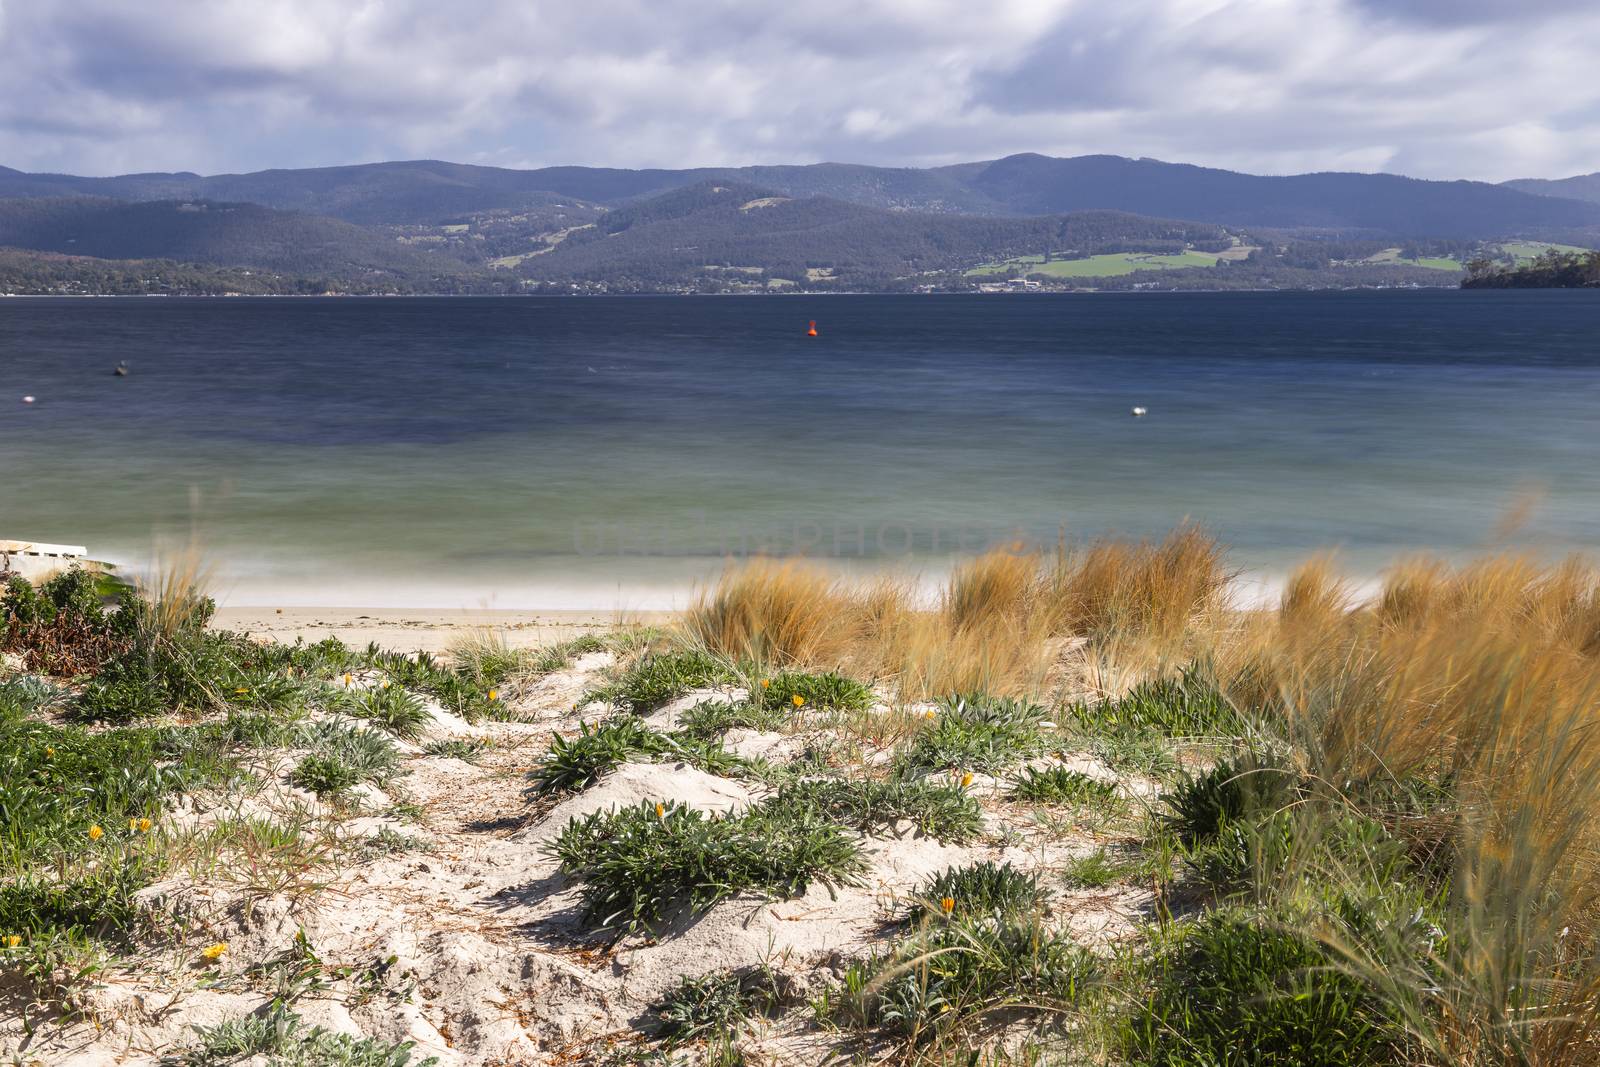 Dennes Point beach located on Bruny Island in Tasmania. by artistrobd